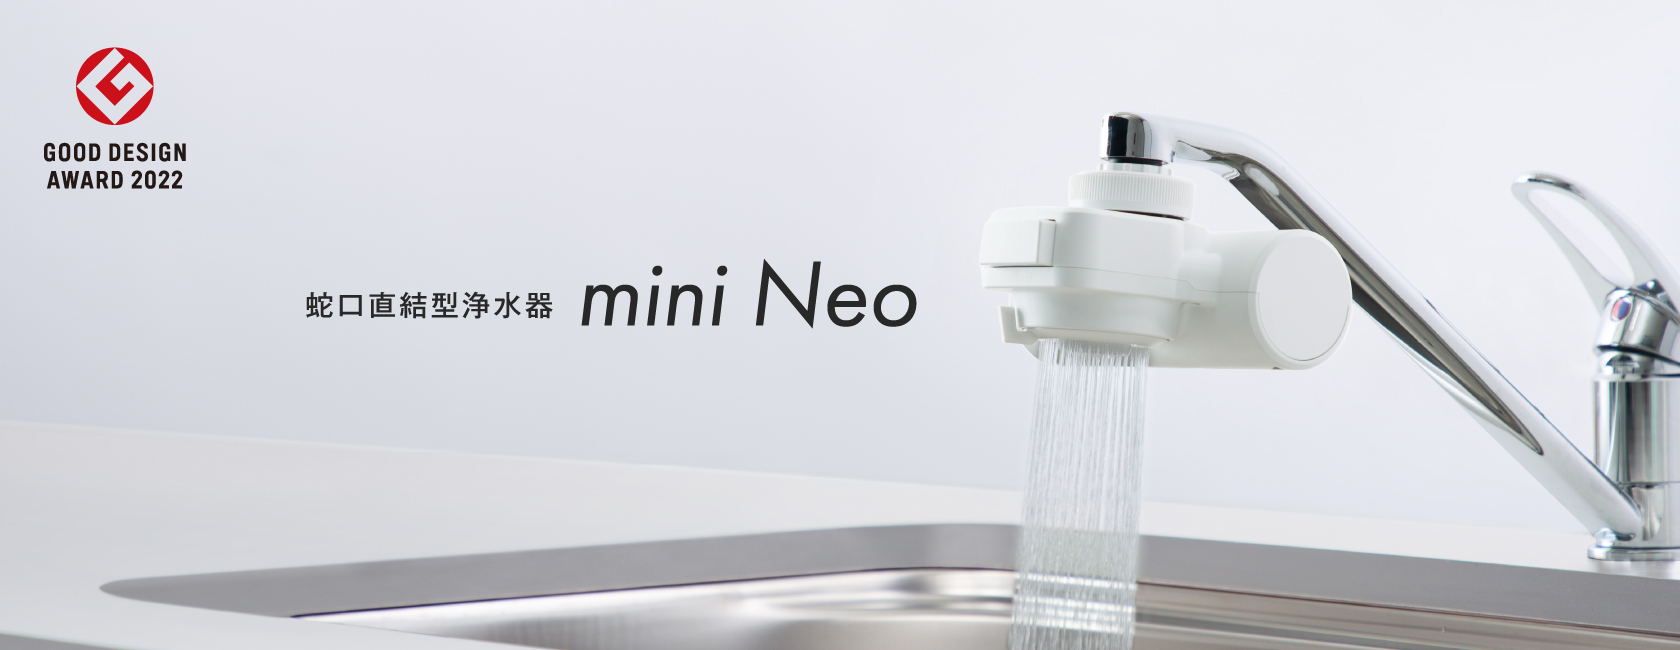 mini Neo